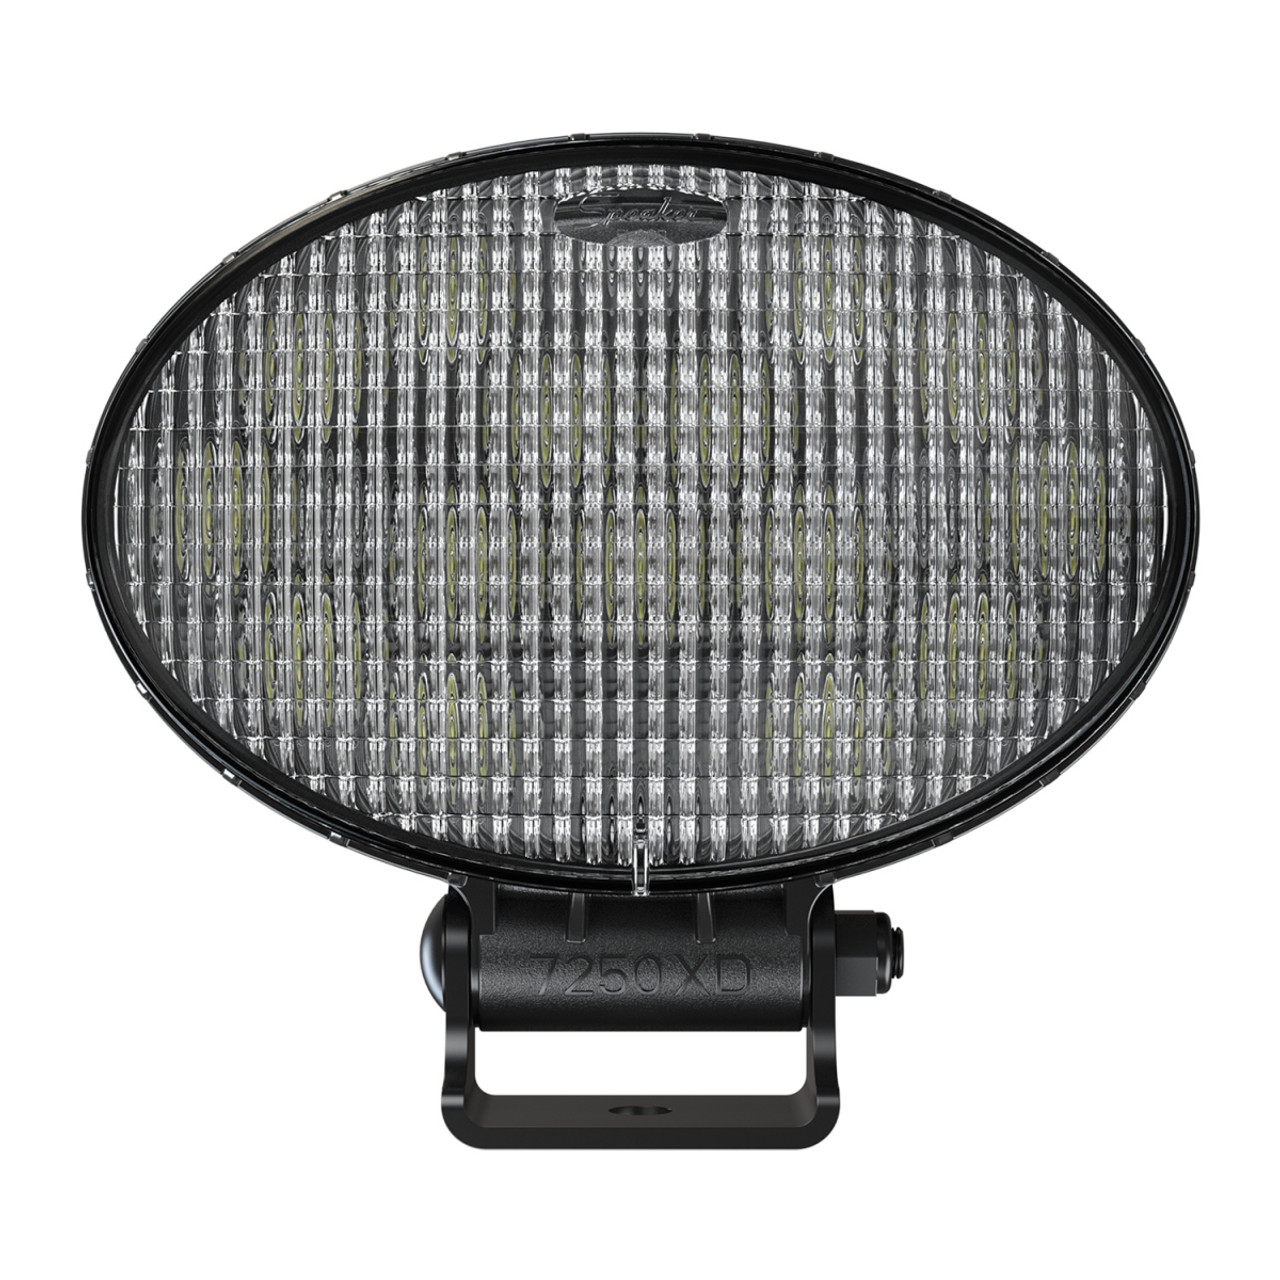 J.W. Speaker 12-24V LED Oval Work Light & Pedestal Mount - Model 7250 XD